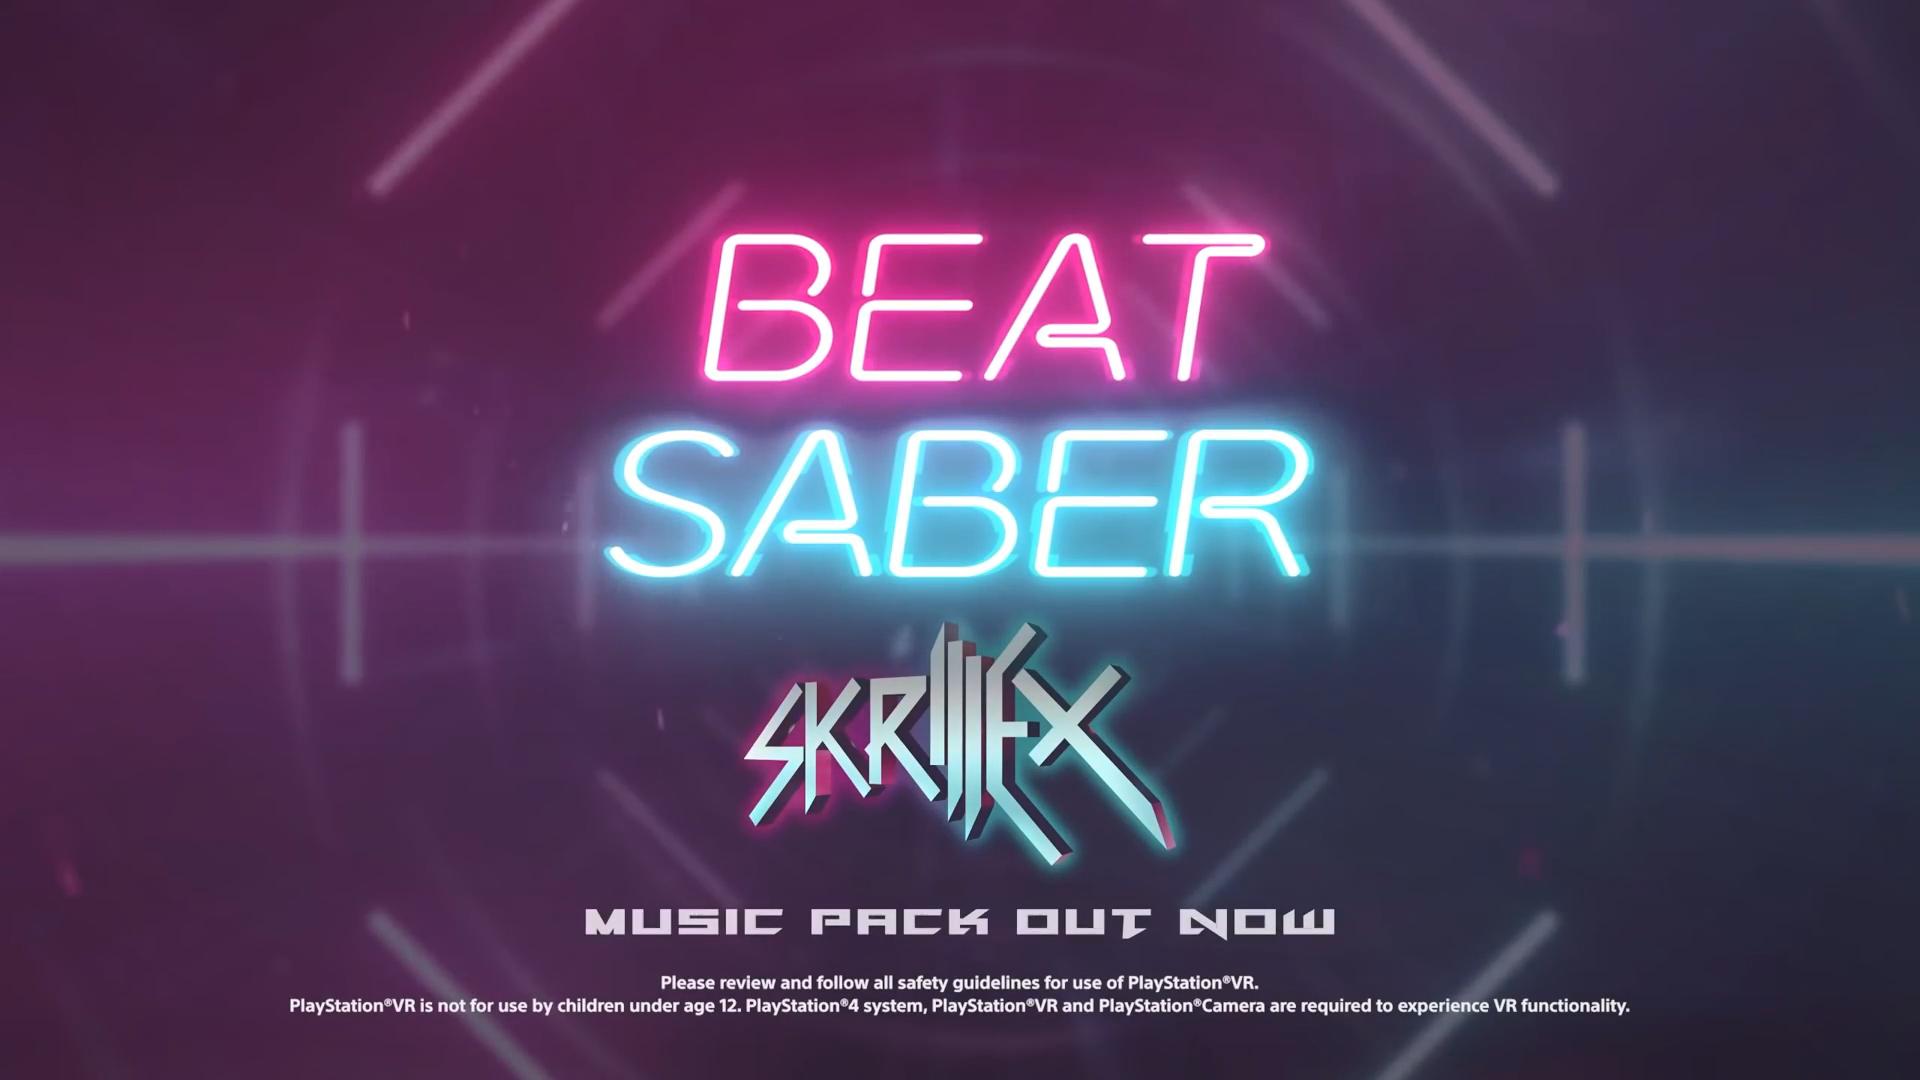 《节奏光剑》Skrillex曲包上线 8首歌曲合集仅售60元